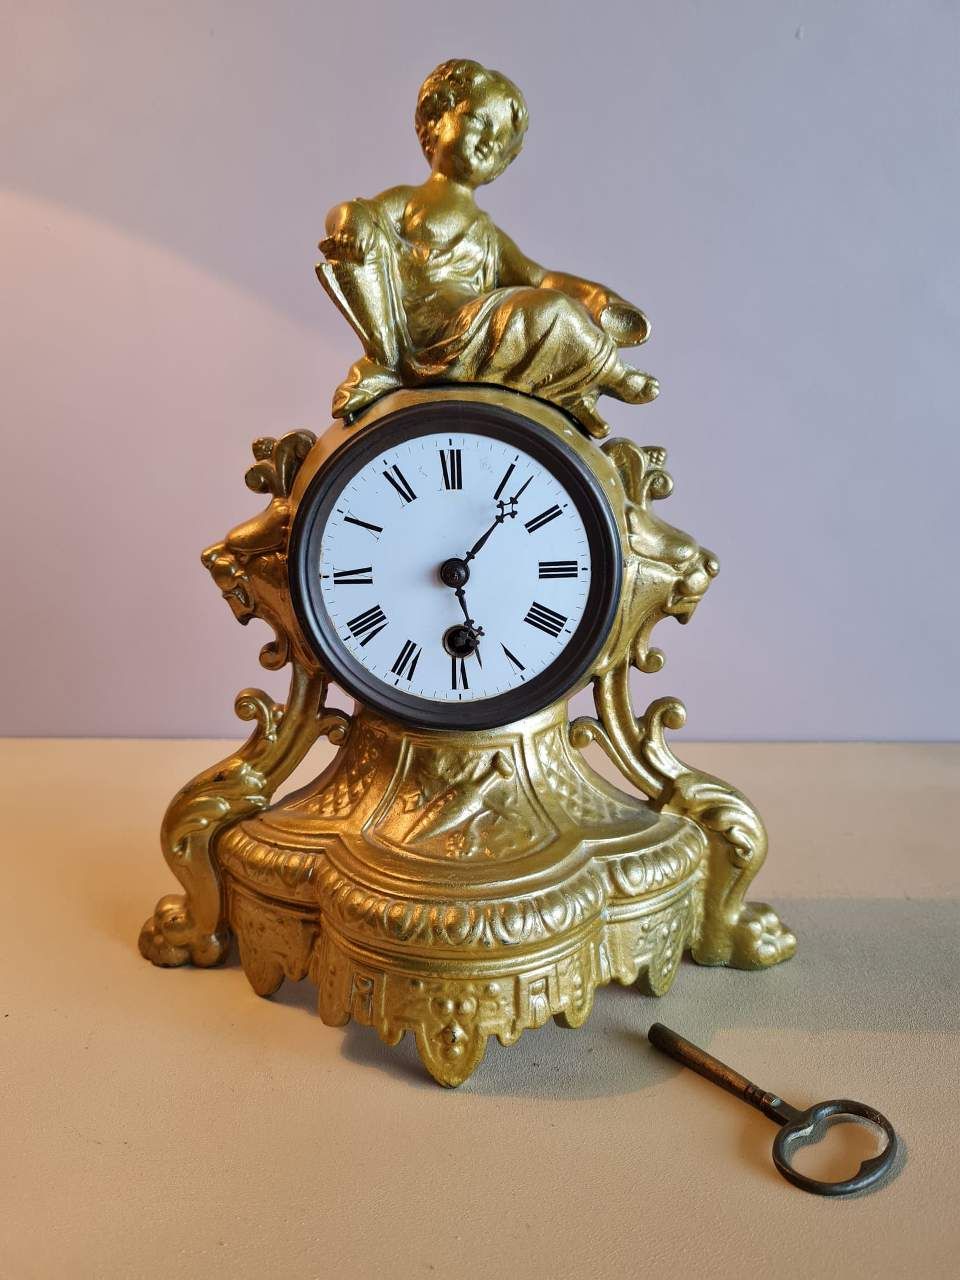 Antique Fireplace Clock,Antique fireplace clock made of metal material.